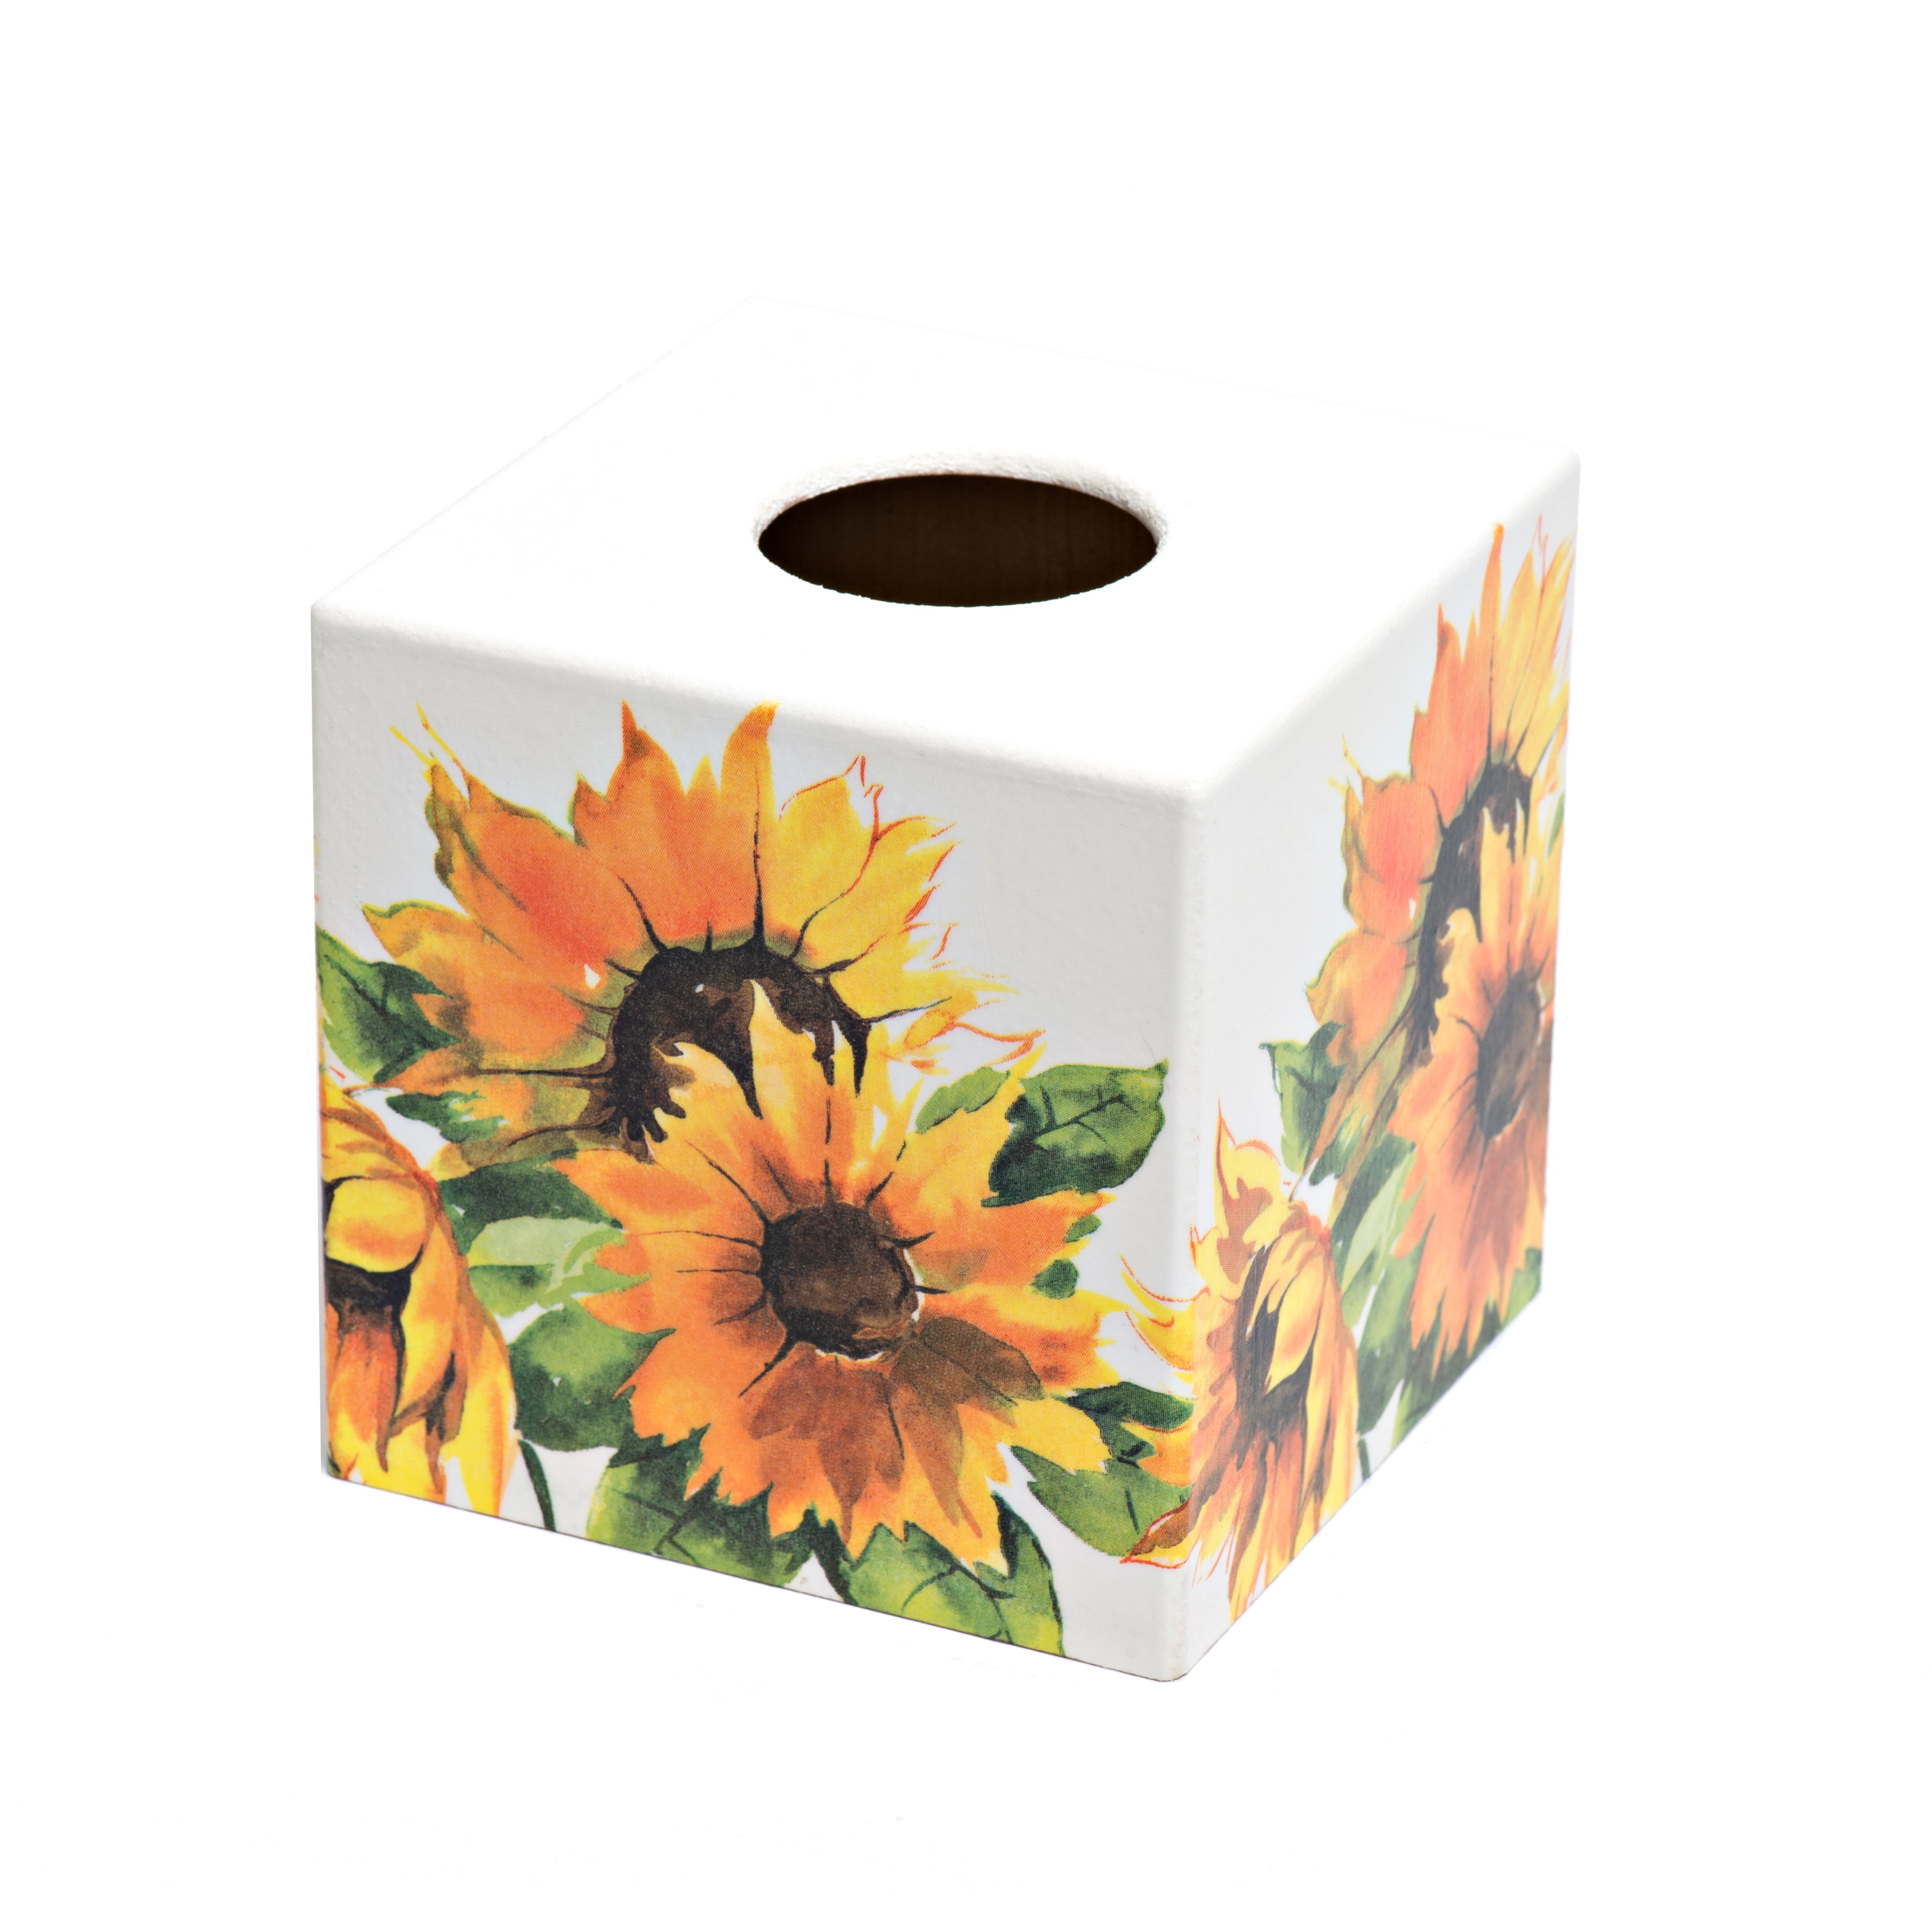 Sunflower Tissue Box Cover - Handmade